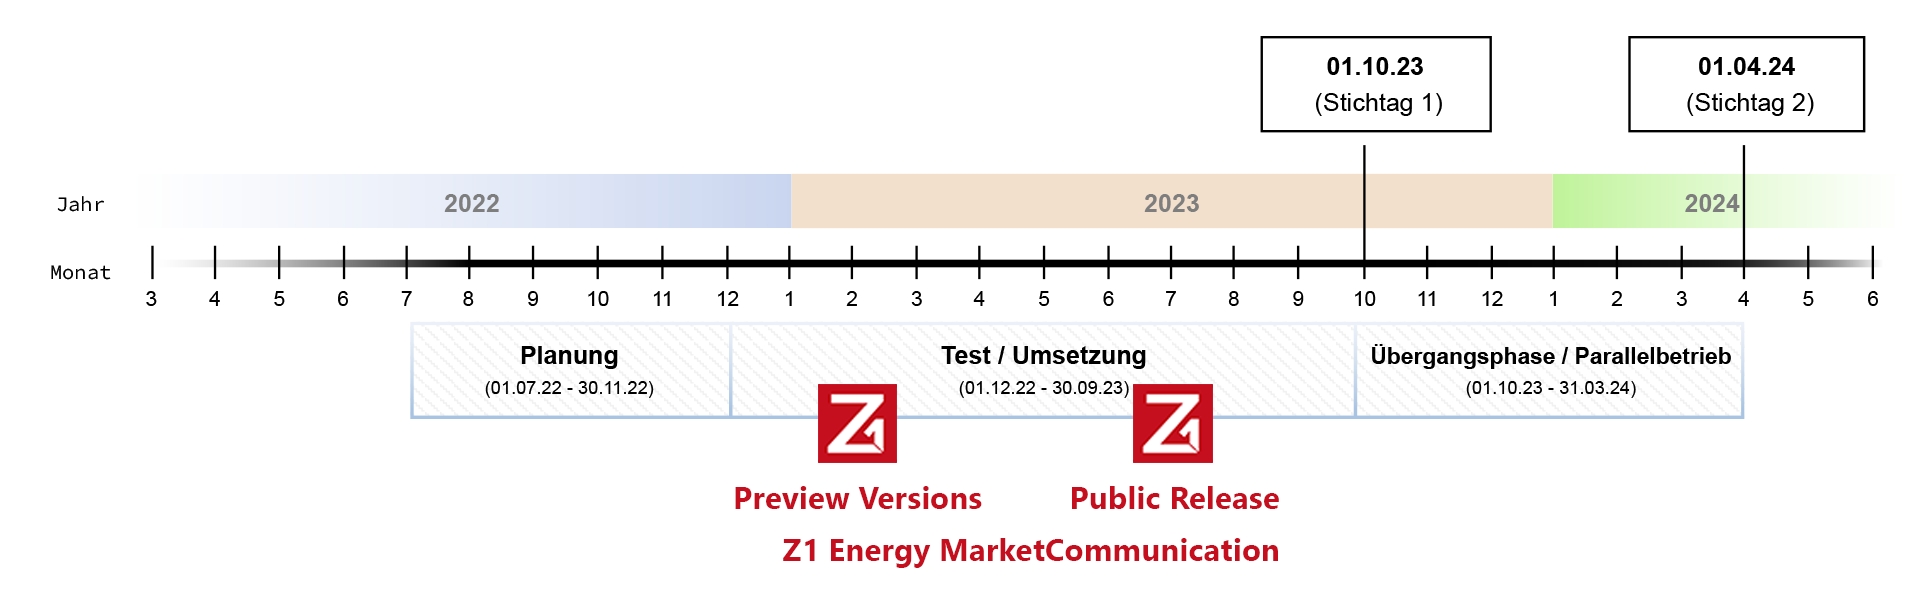 Zeitstrahl Einführung AS4 mit Z1 Releases